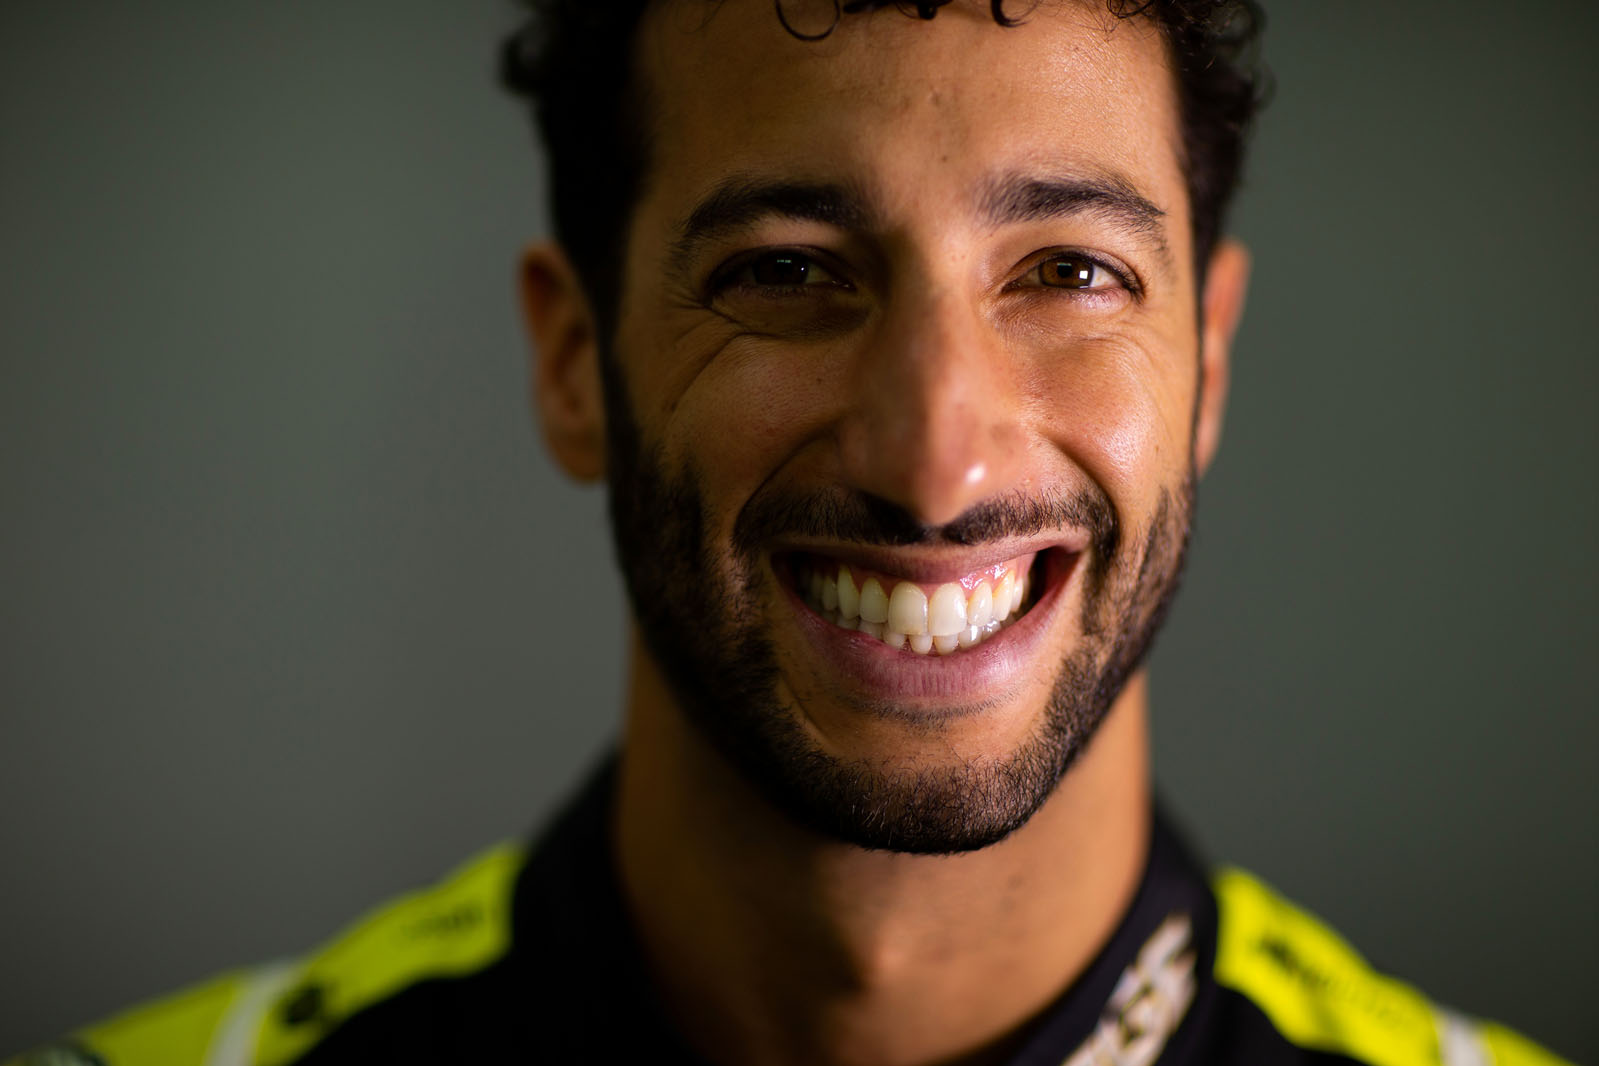 Daniel Ricciardo on F1's future, Hamilton's success and how to win ...